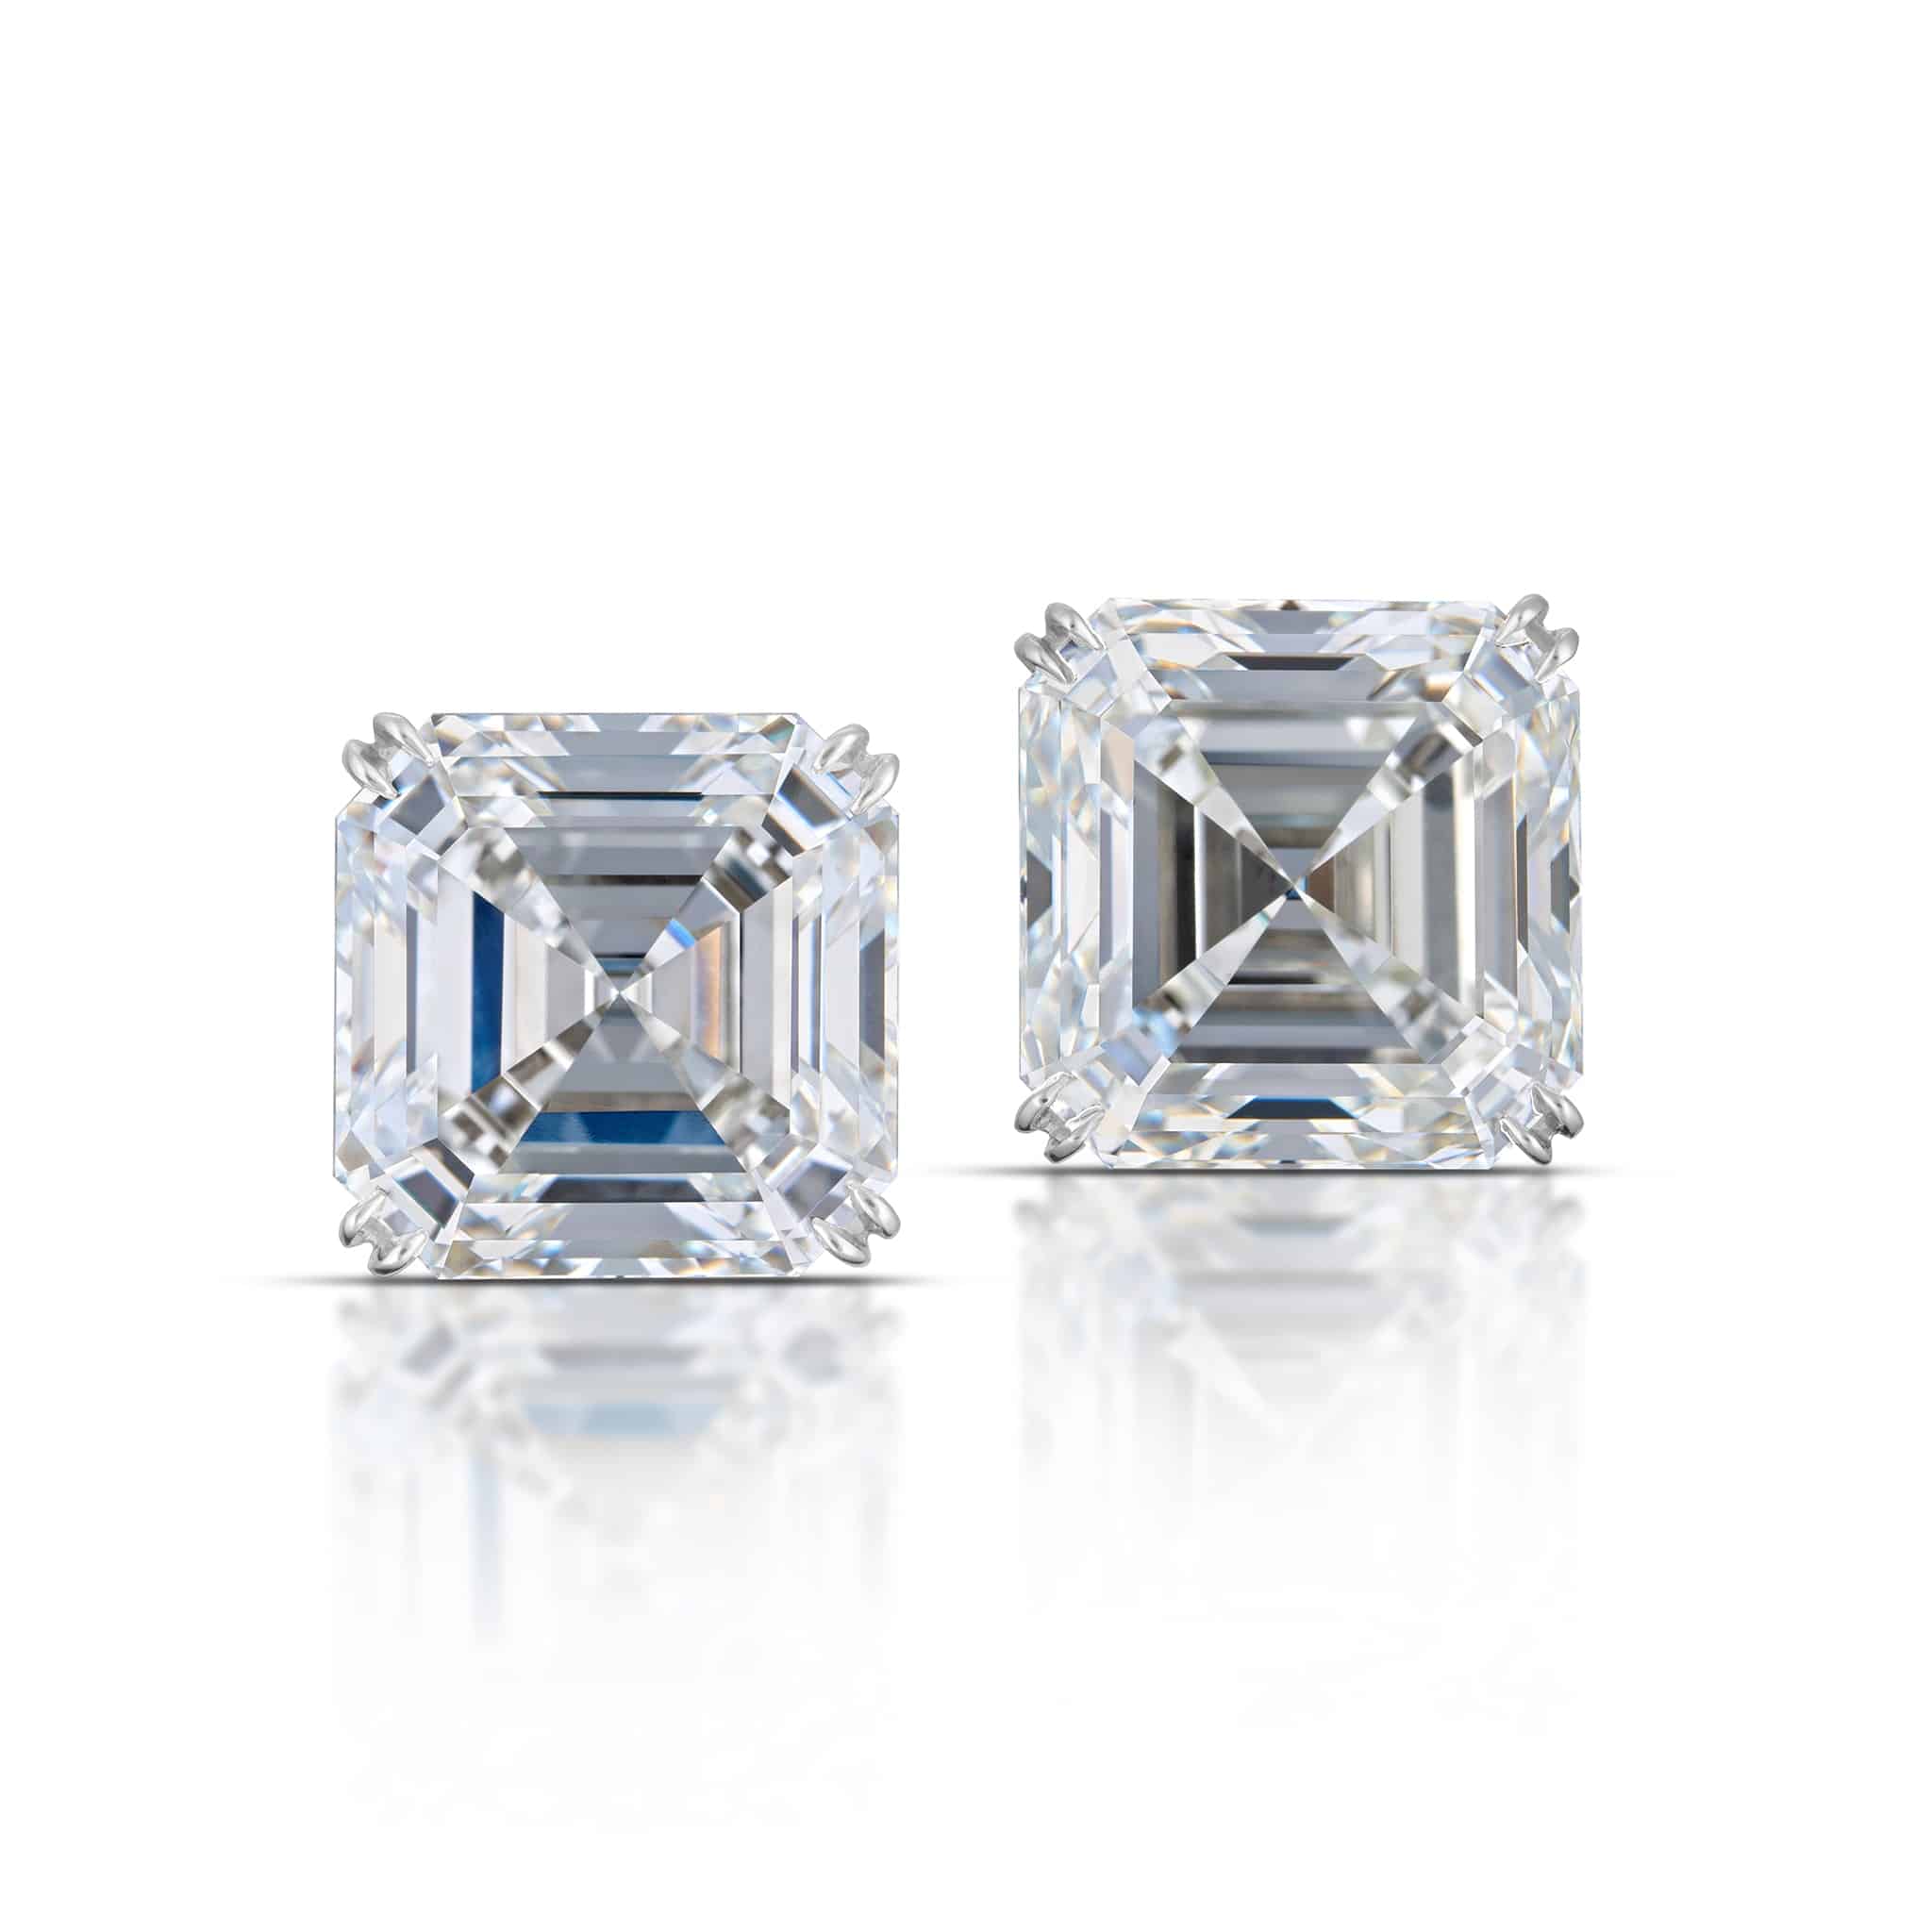 Certified 050 cttw Asscher Diamond Stud Earrings in 14k White Gold 4Prong  Martini GH VS  Diamondwishcom